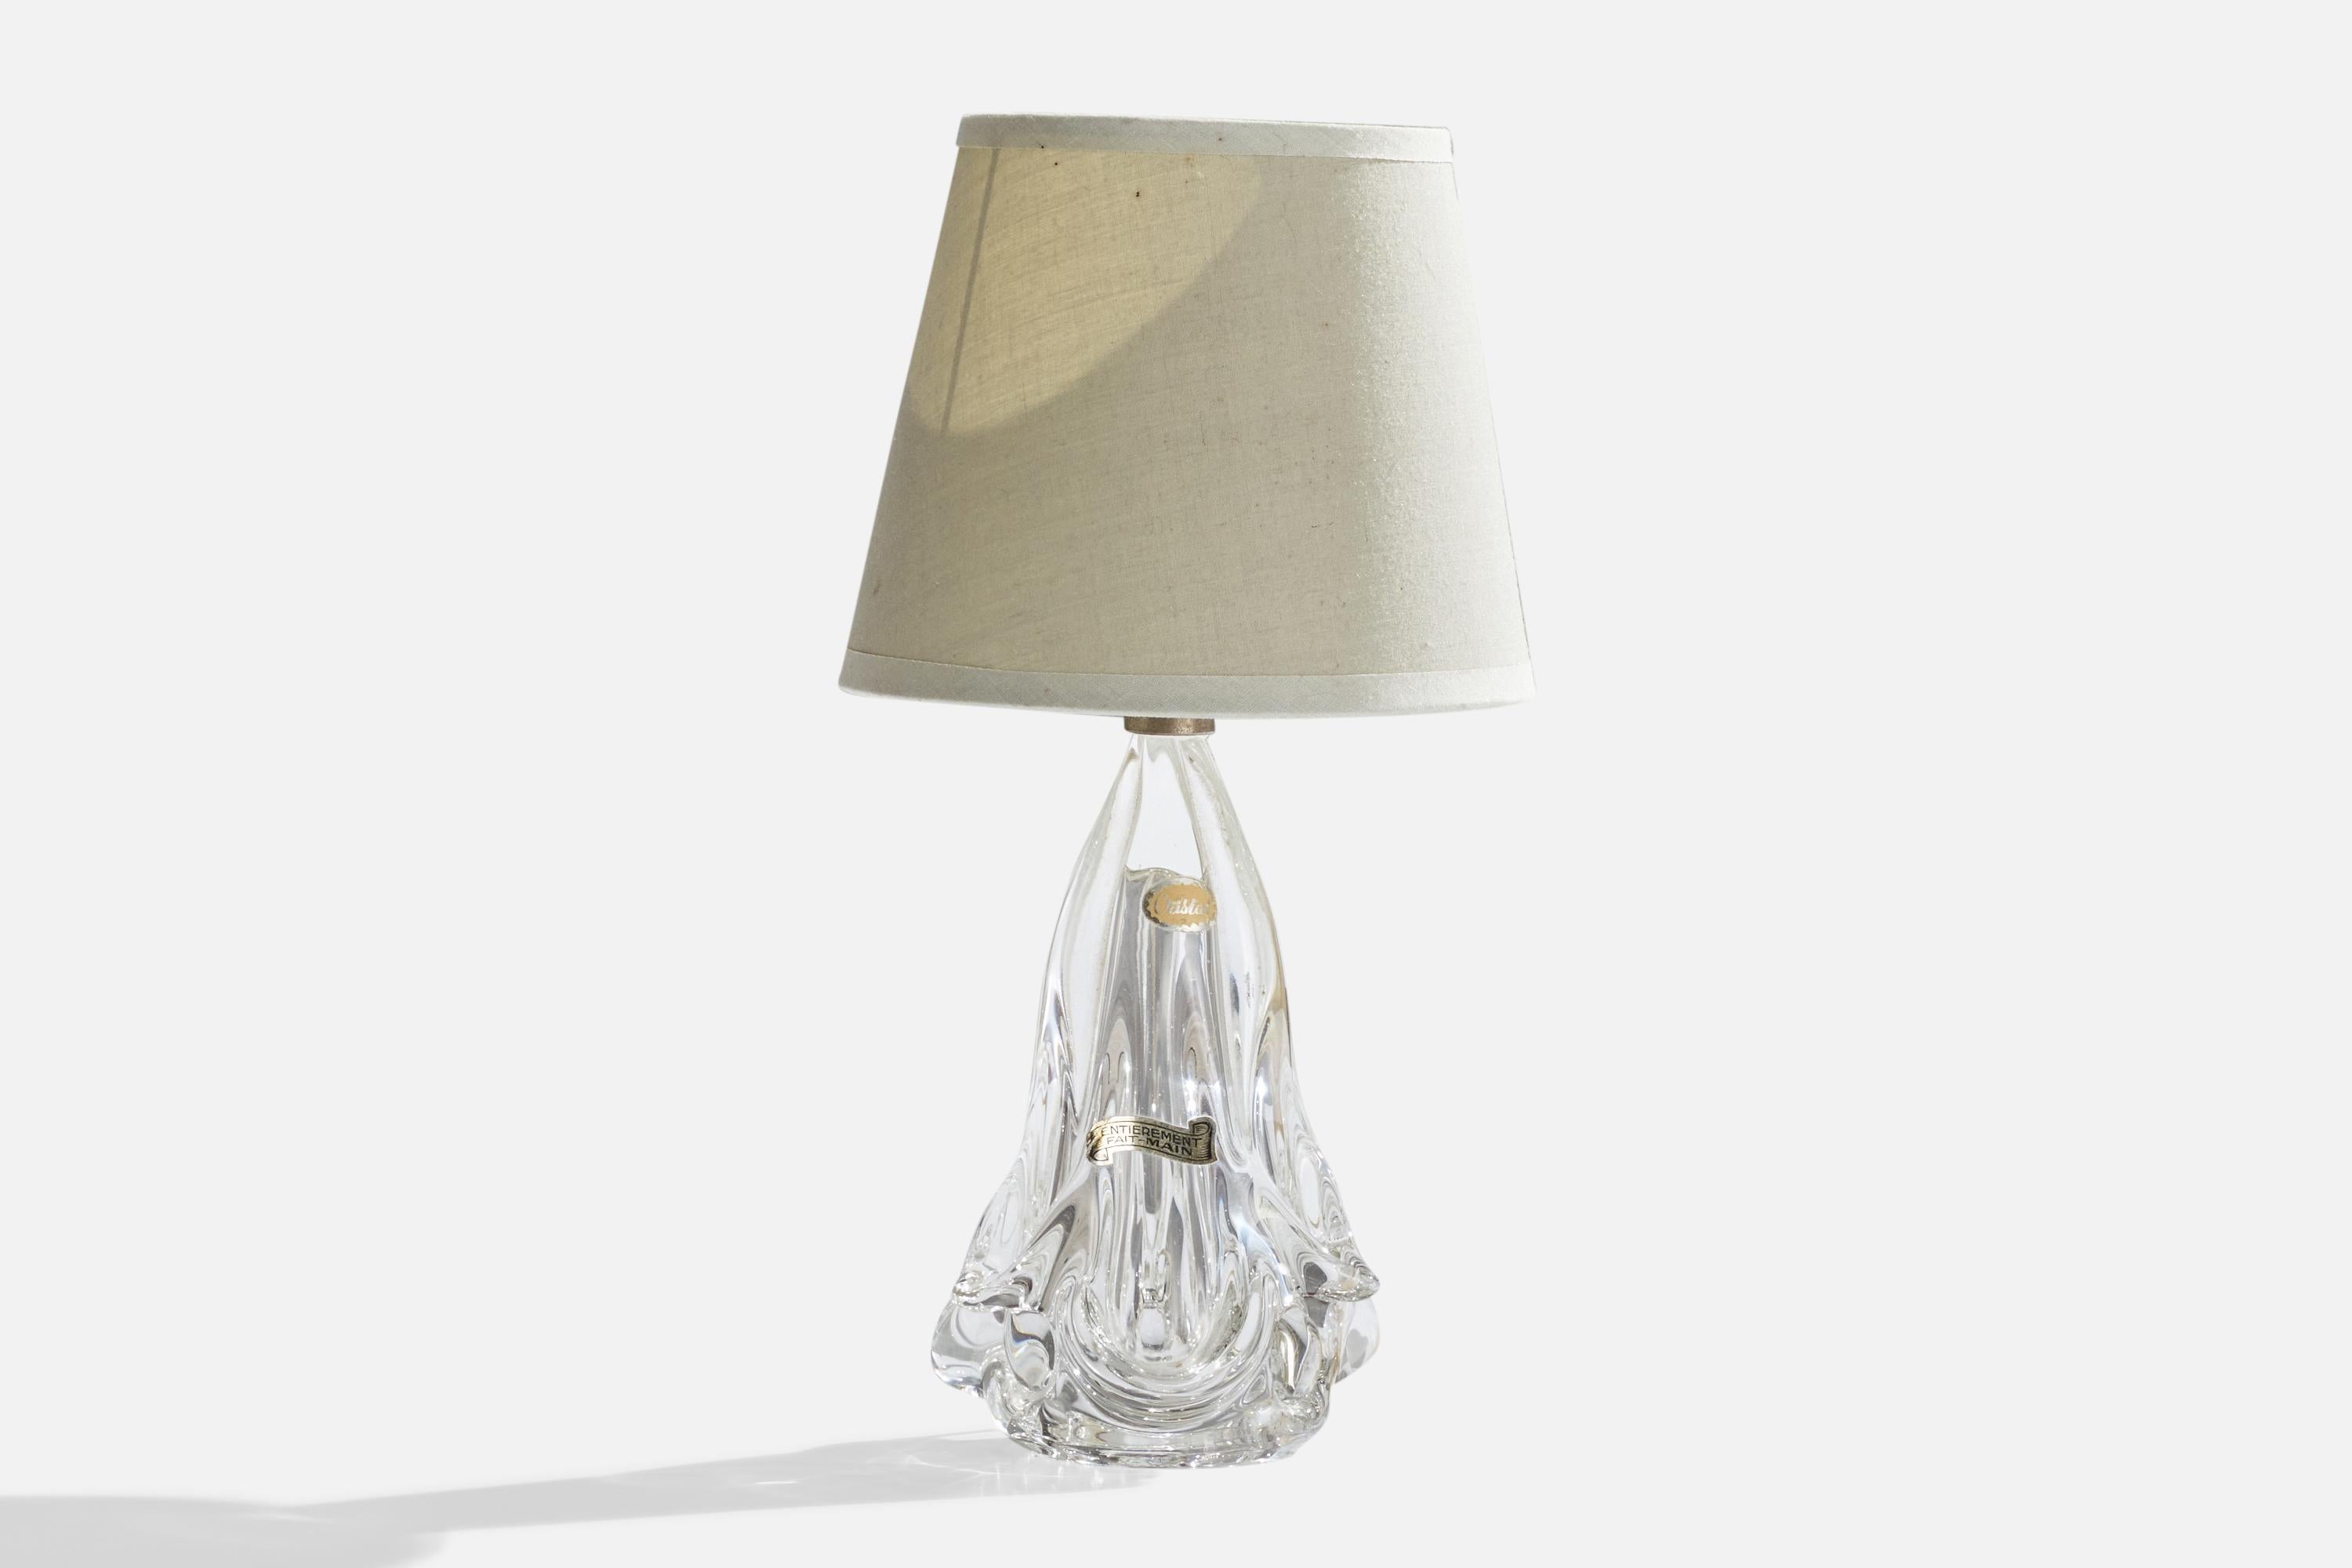 Lampe de table en verre soufflé de forme libre et tissu blanc cassé, conçue et produite en France, vers les années 1940.

Dimensions globales (pouces) : 12.5